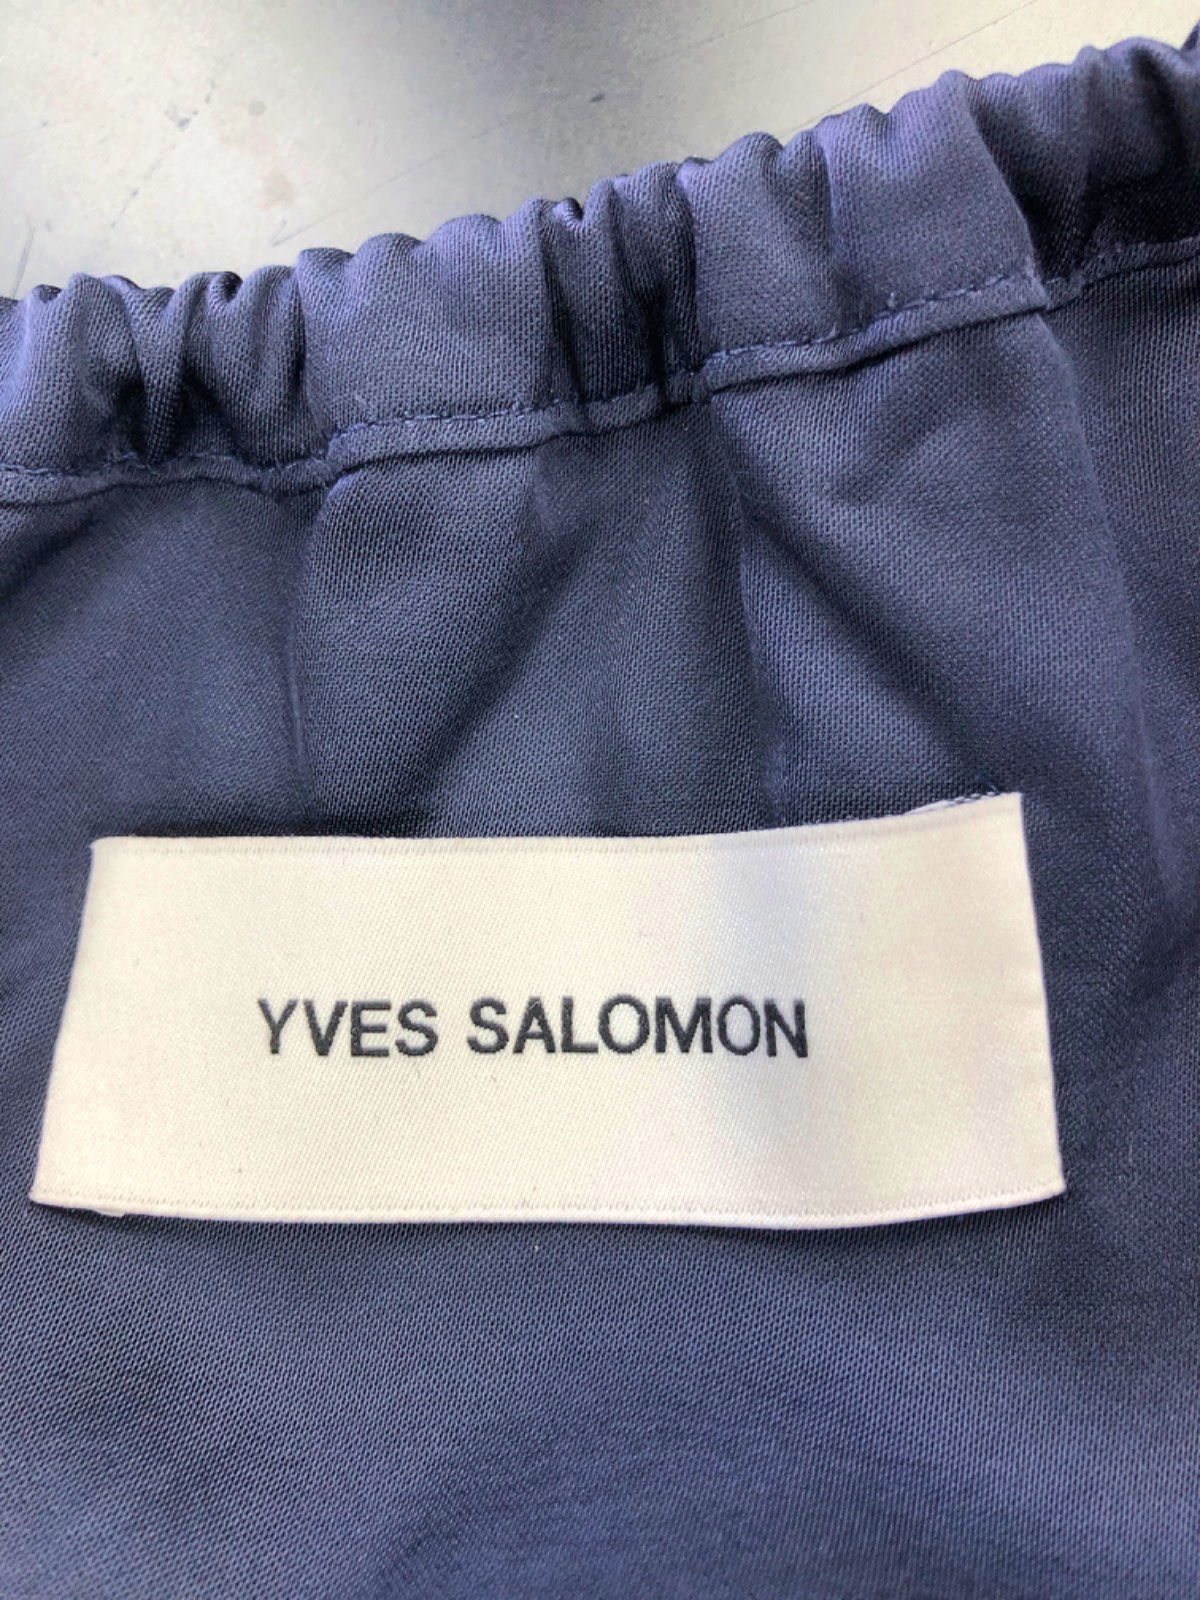 Yves Salomon Navy Top Size UK 6